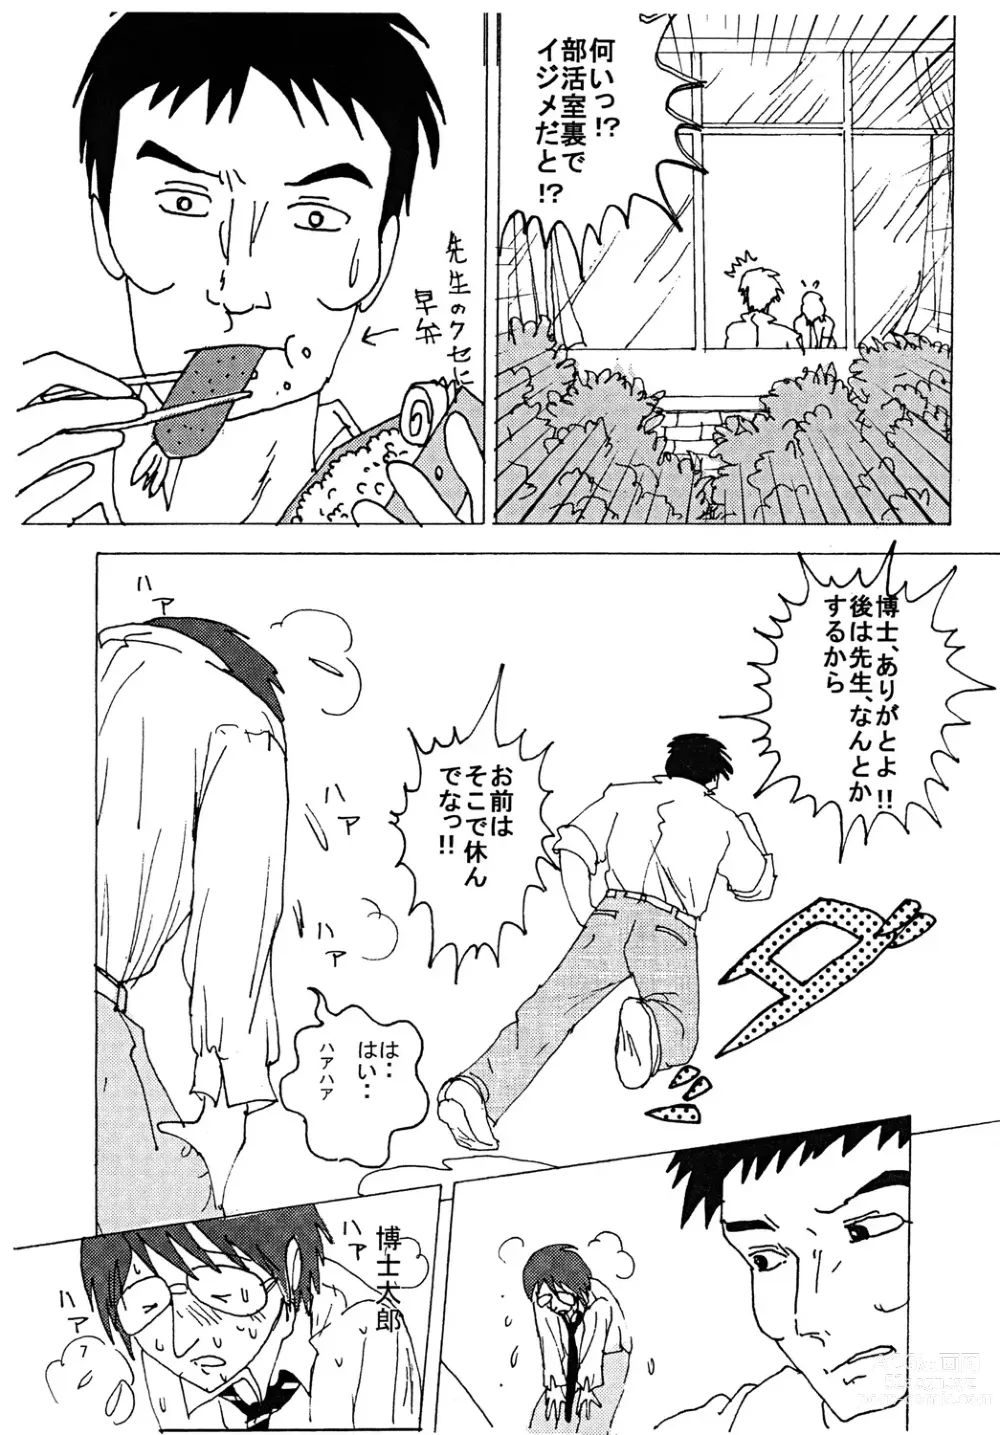 Page 6 of doujinshi Mune Ippai no Dizzy